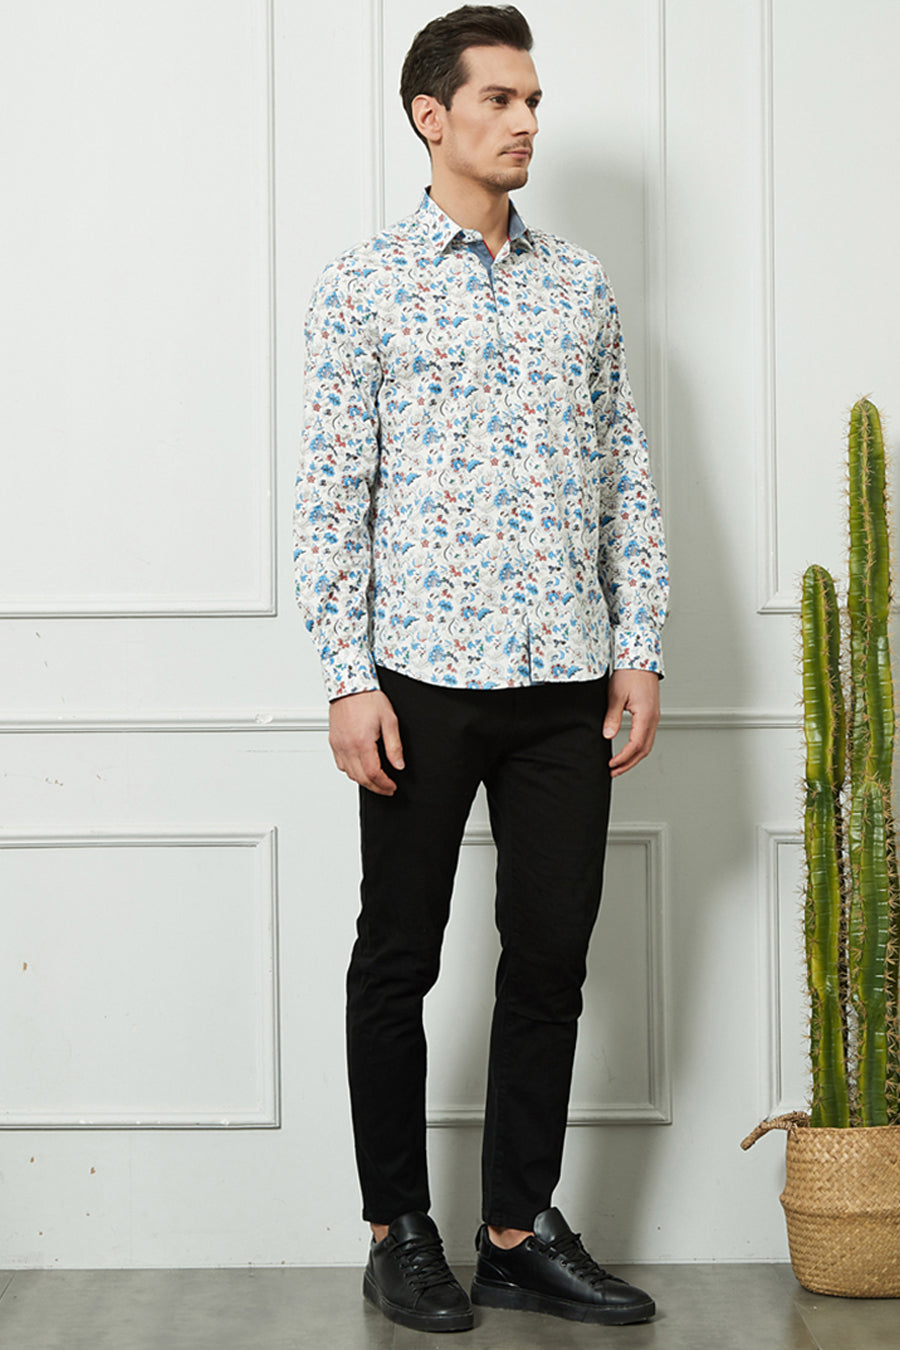 Ανδρικό πουκάμισο Eusebio, Λευκό/Γαλάζιο 2